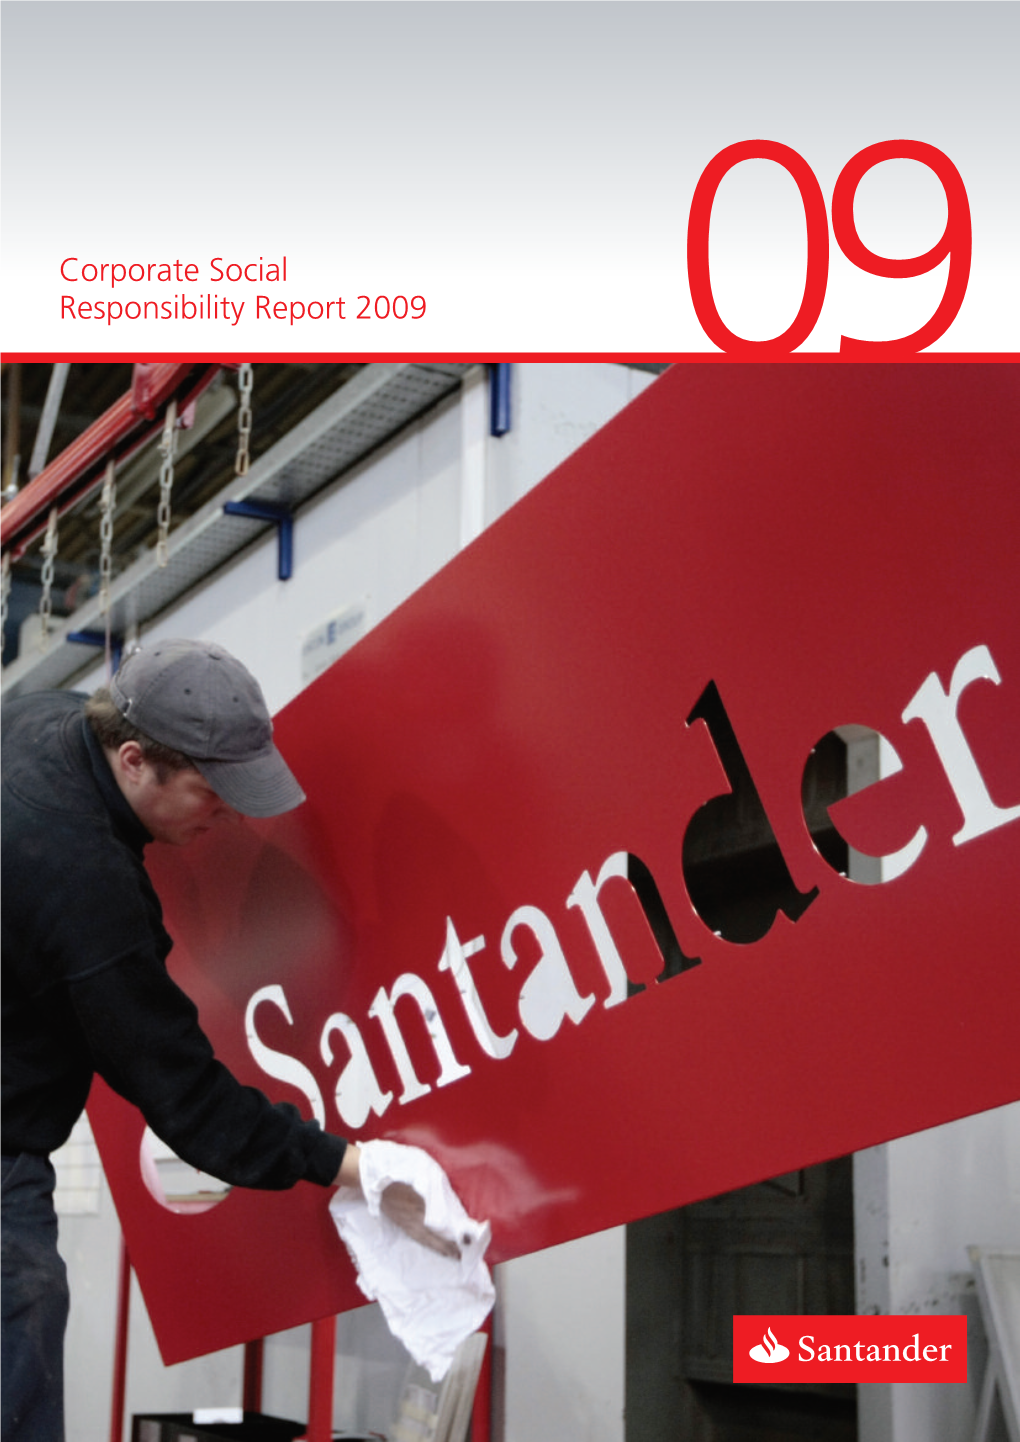 Corporate Social Responsibility Report 2009 09 This Is Santander UK Plc’S (Santander UK) Tenth Annual Corporate Social Responsibility Report (CSR)